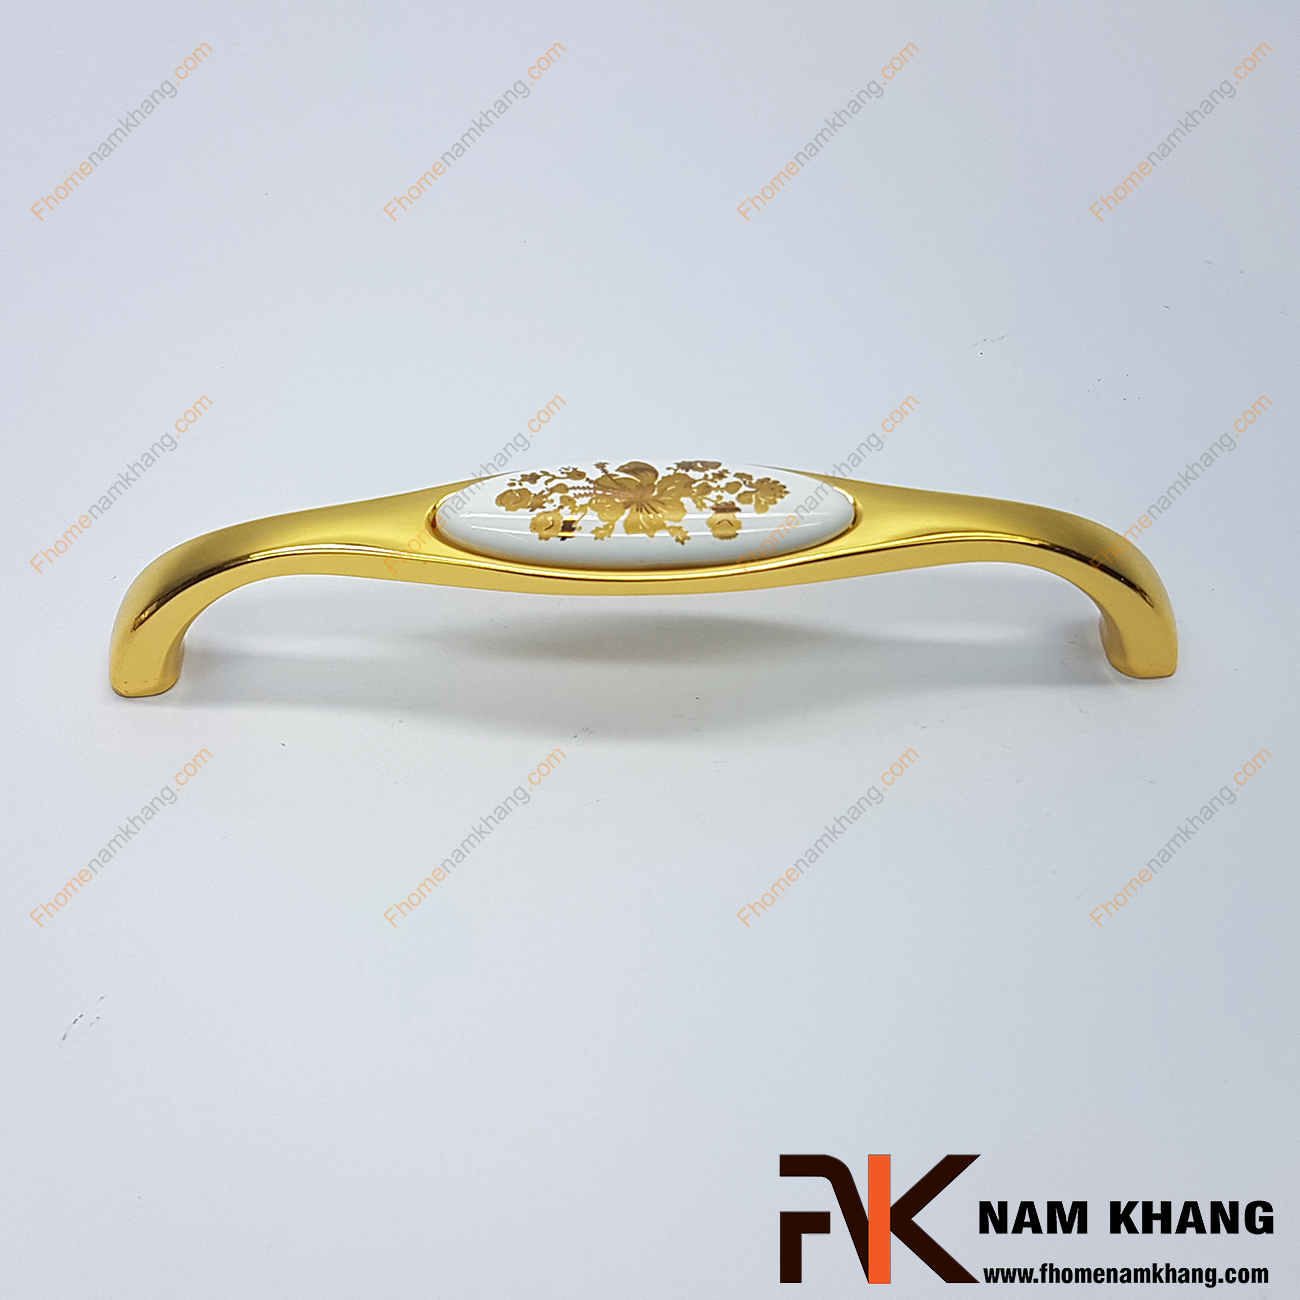 Tay nắm cửa tủ phối sứ đế vàng bóng NK359-128HV2 với thiết kế bền đẹp và tạo điểm nhấn hoa vàng trên mặt sứ cao cấp, đây là sản phẩm đang được đánh giá cao trong ngành nội thất thẫm mỹ bởi chất lượng và vẻ đẹp thu hút ánh nhìn của nó